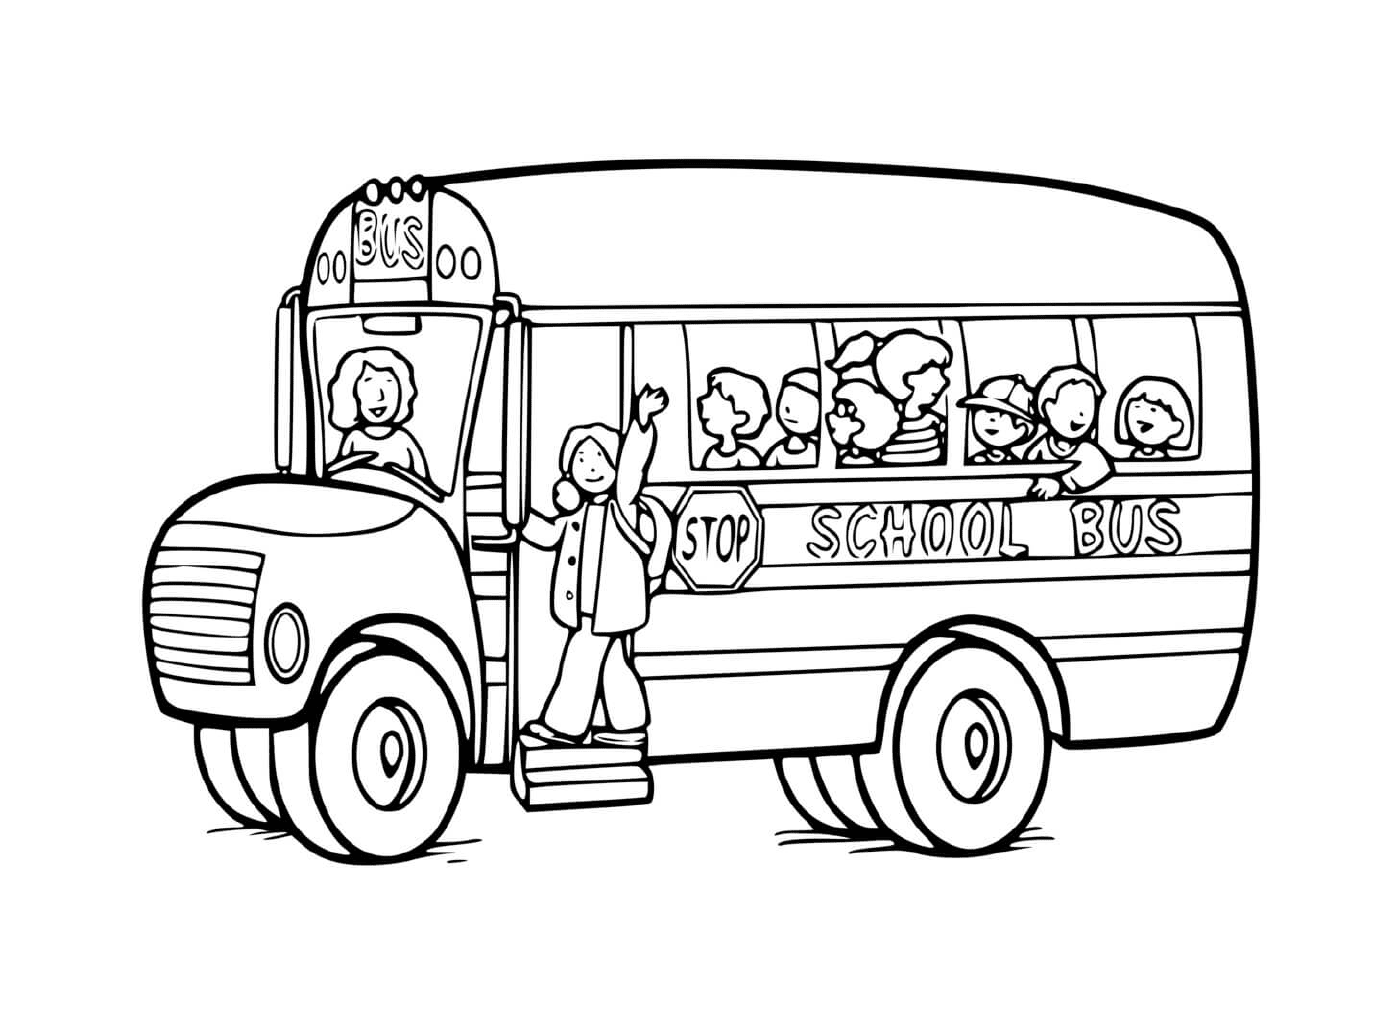  Un medio de transporte escolar: el autobús 